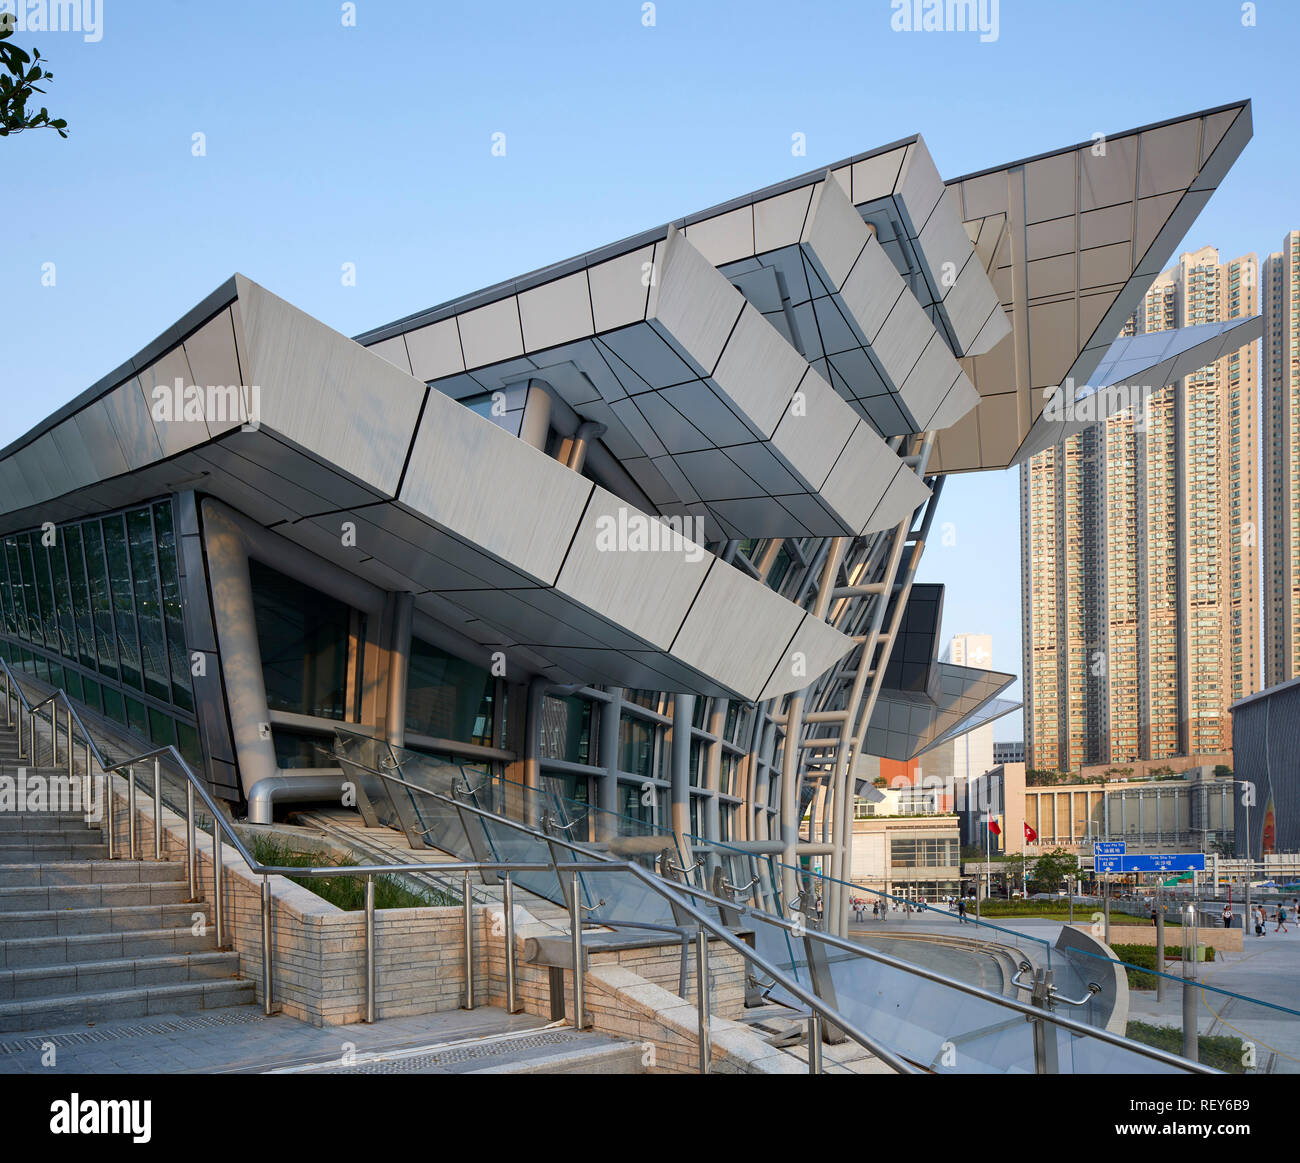 Vue de côté. La gare de West Kowloon, Hong Kong, Chine. Architecte : Andrew Bromberg Aedas, 2018. Banque D'Images